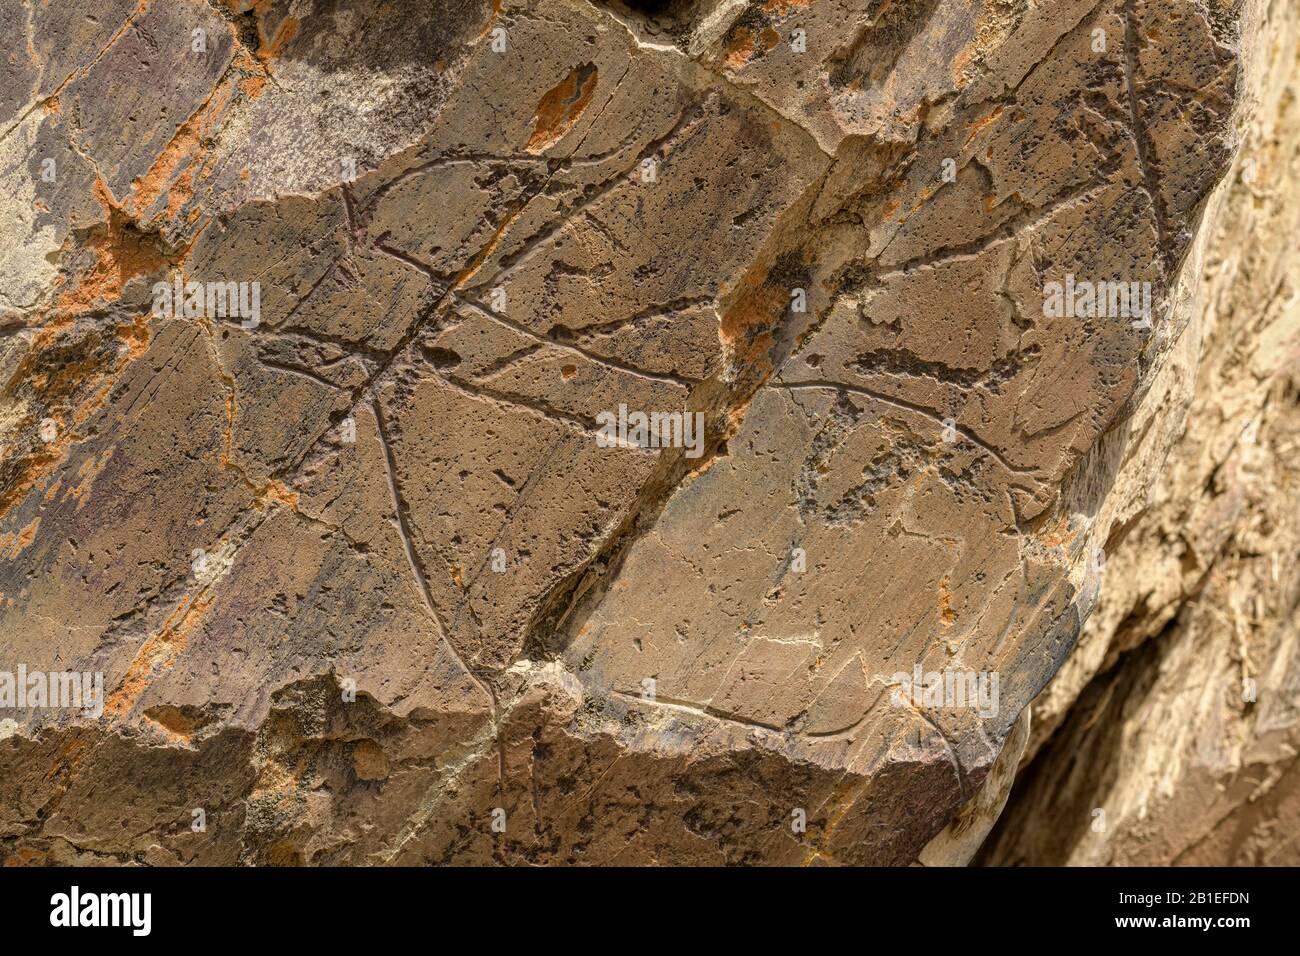 Prehistórico Rock Art Sitios de La Coa (ibex), Grabados del valle de Côa (petroglifos de más de 22,000 años) han sido reconocidos como un heri cultural Foto de stock